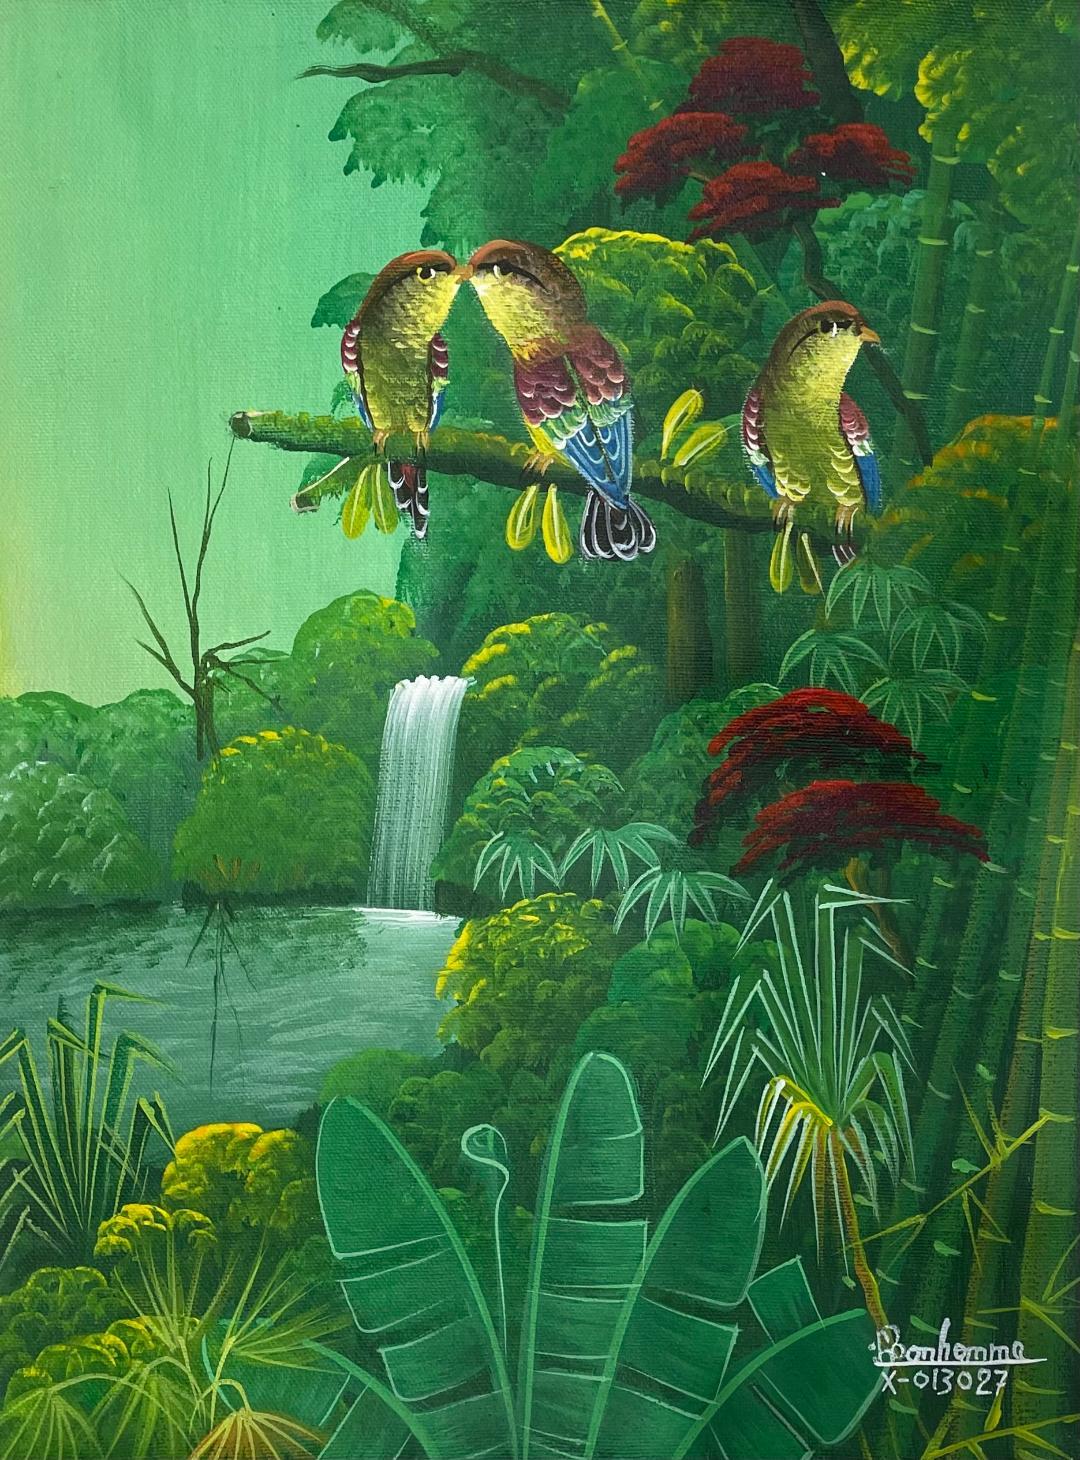 Albott Bonhomme Landscape Painting - A Couple & A Bird 16"x12" Original Haitian Contemporary Painting